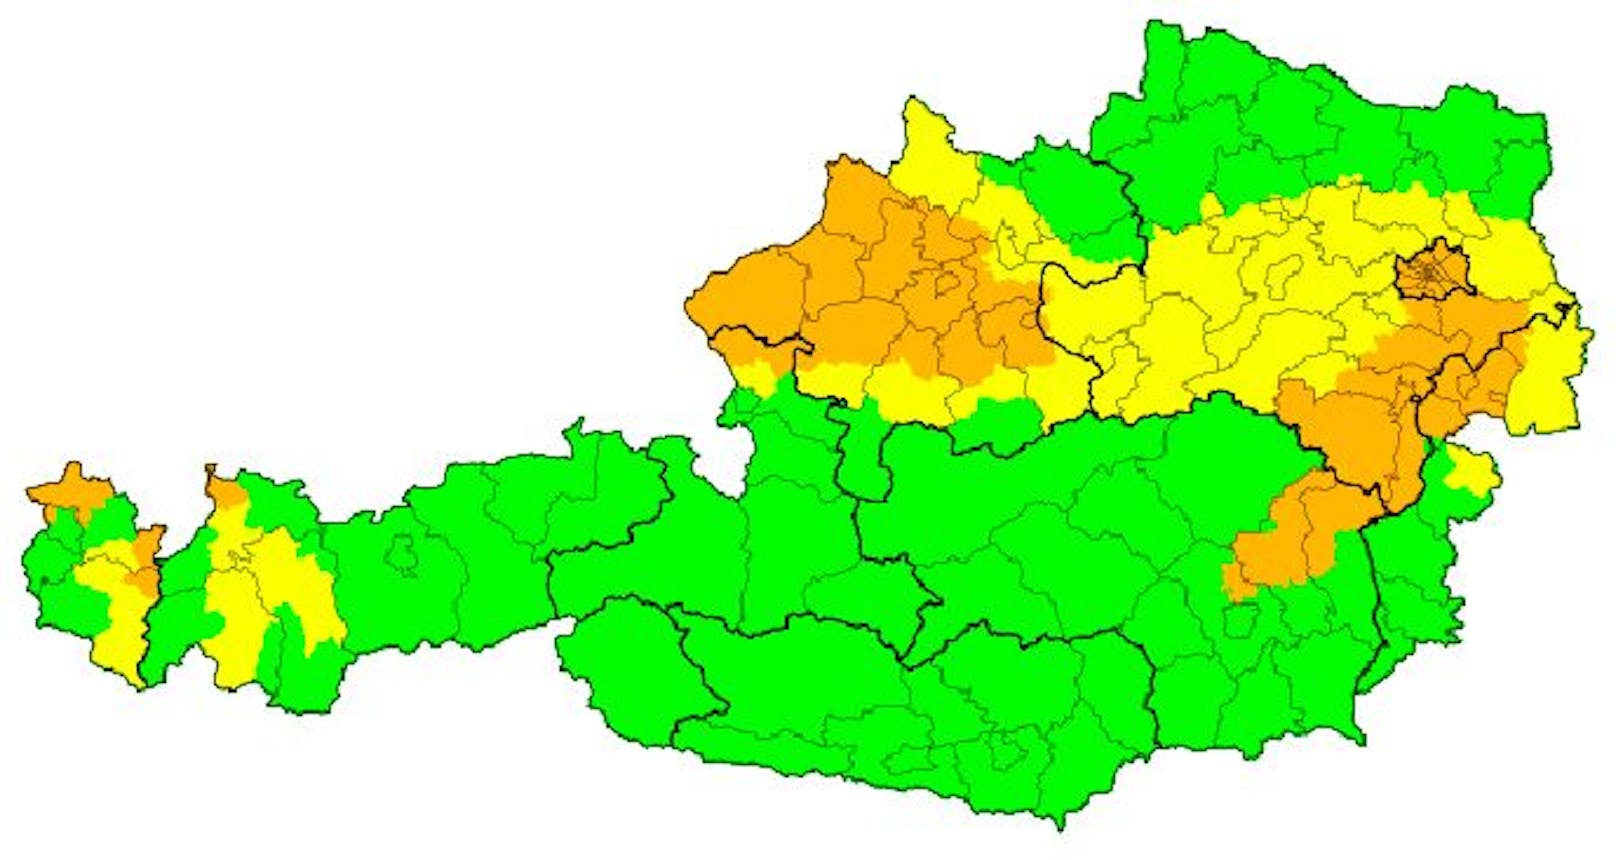 Die aktuellen Sturmwarnungen (orange). In gelb die Vorwarnungen für den heutigen Tag.